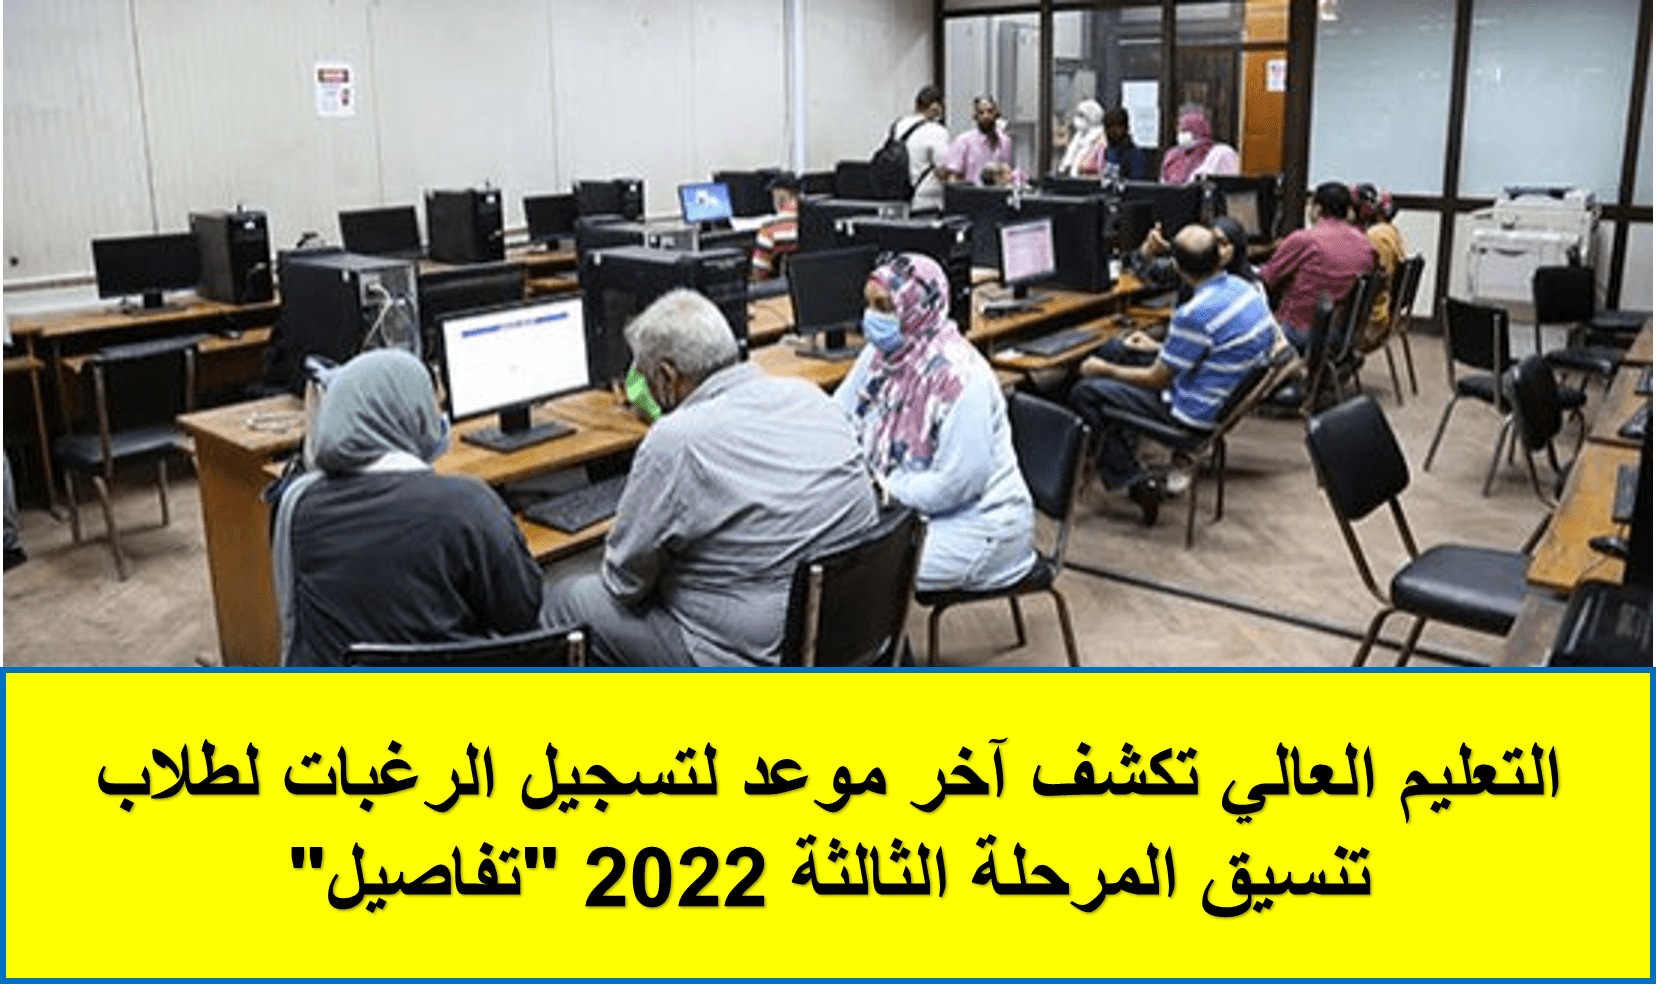 آخر موعد لتسجيل الرغبات لطلاب تنسيق المرحلة الثالثة 2022